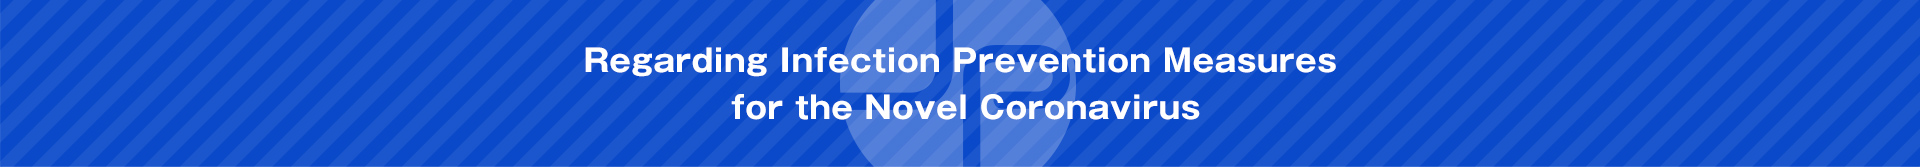 Regarding Infection Prevention Measures for the Novel Coronavirus